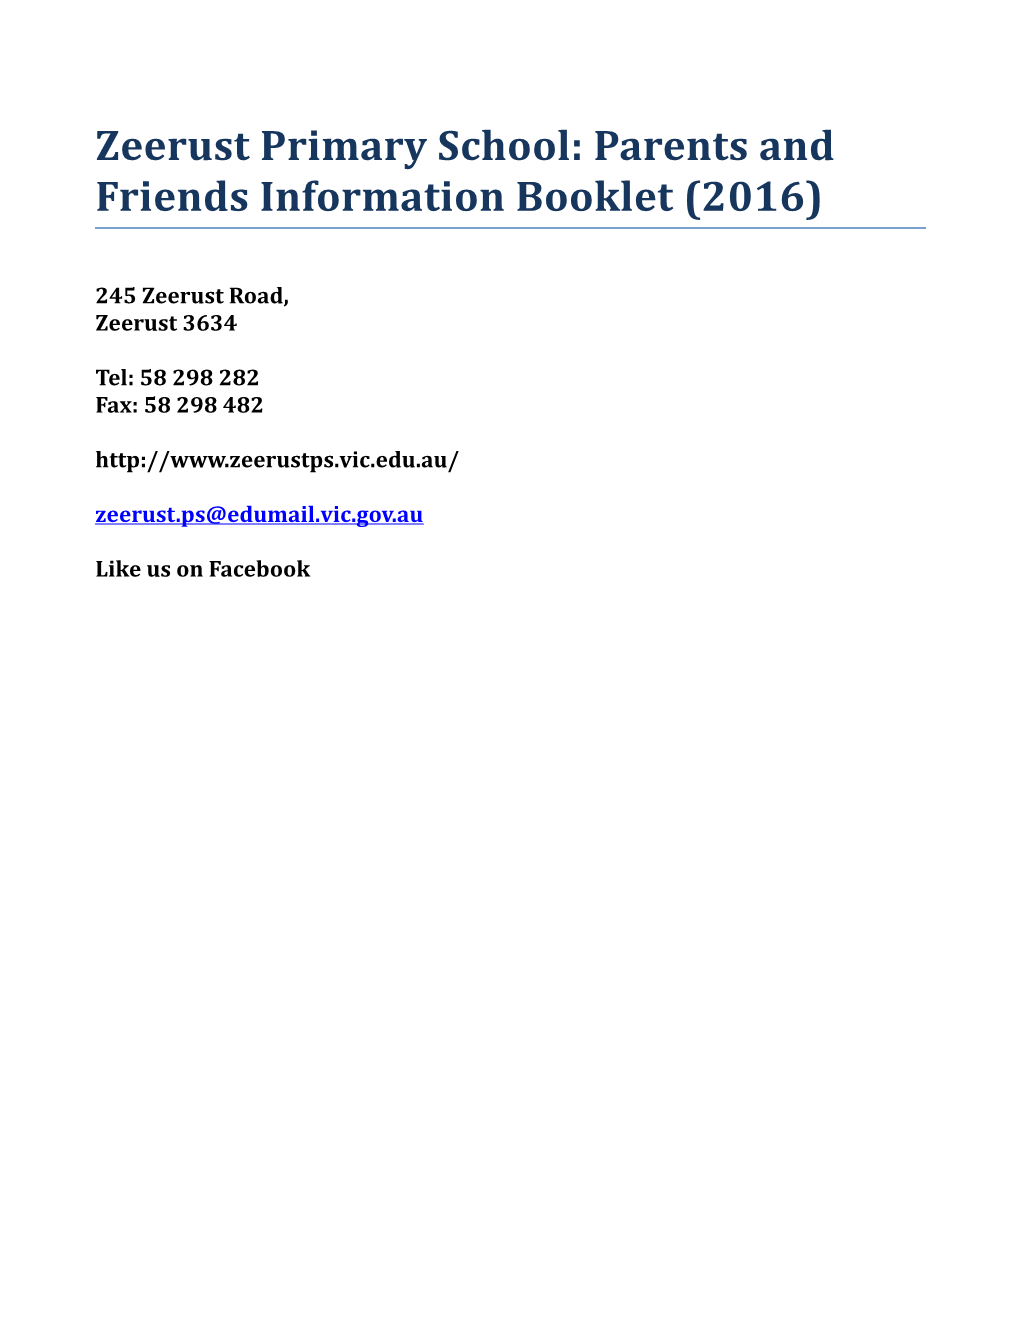 Zeerust Primary School: Parents and Friends Information Booklet(2016)